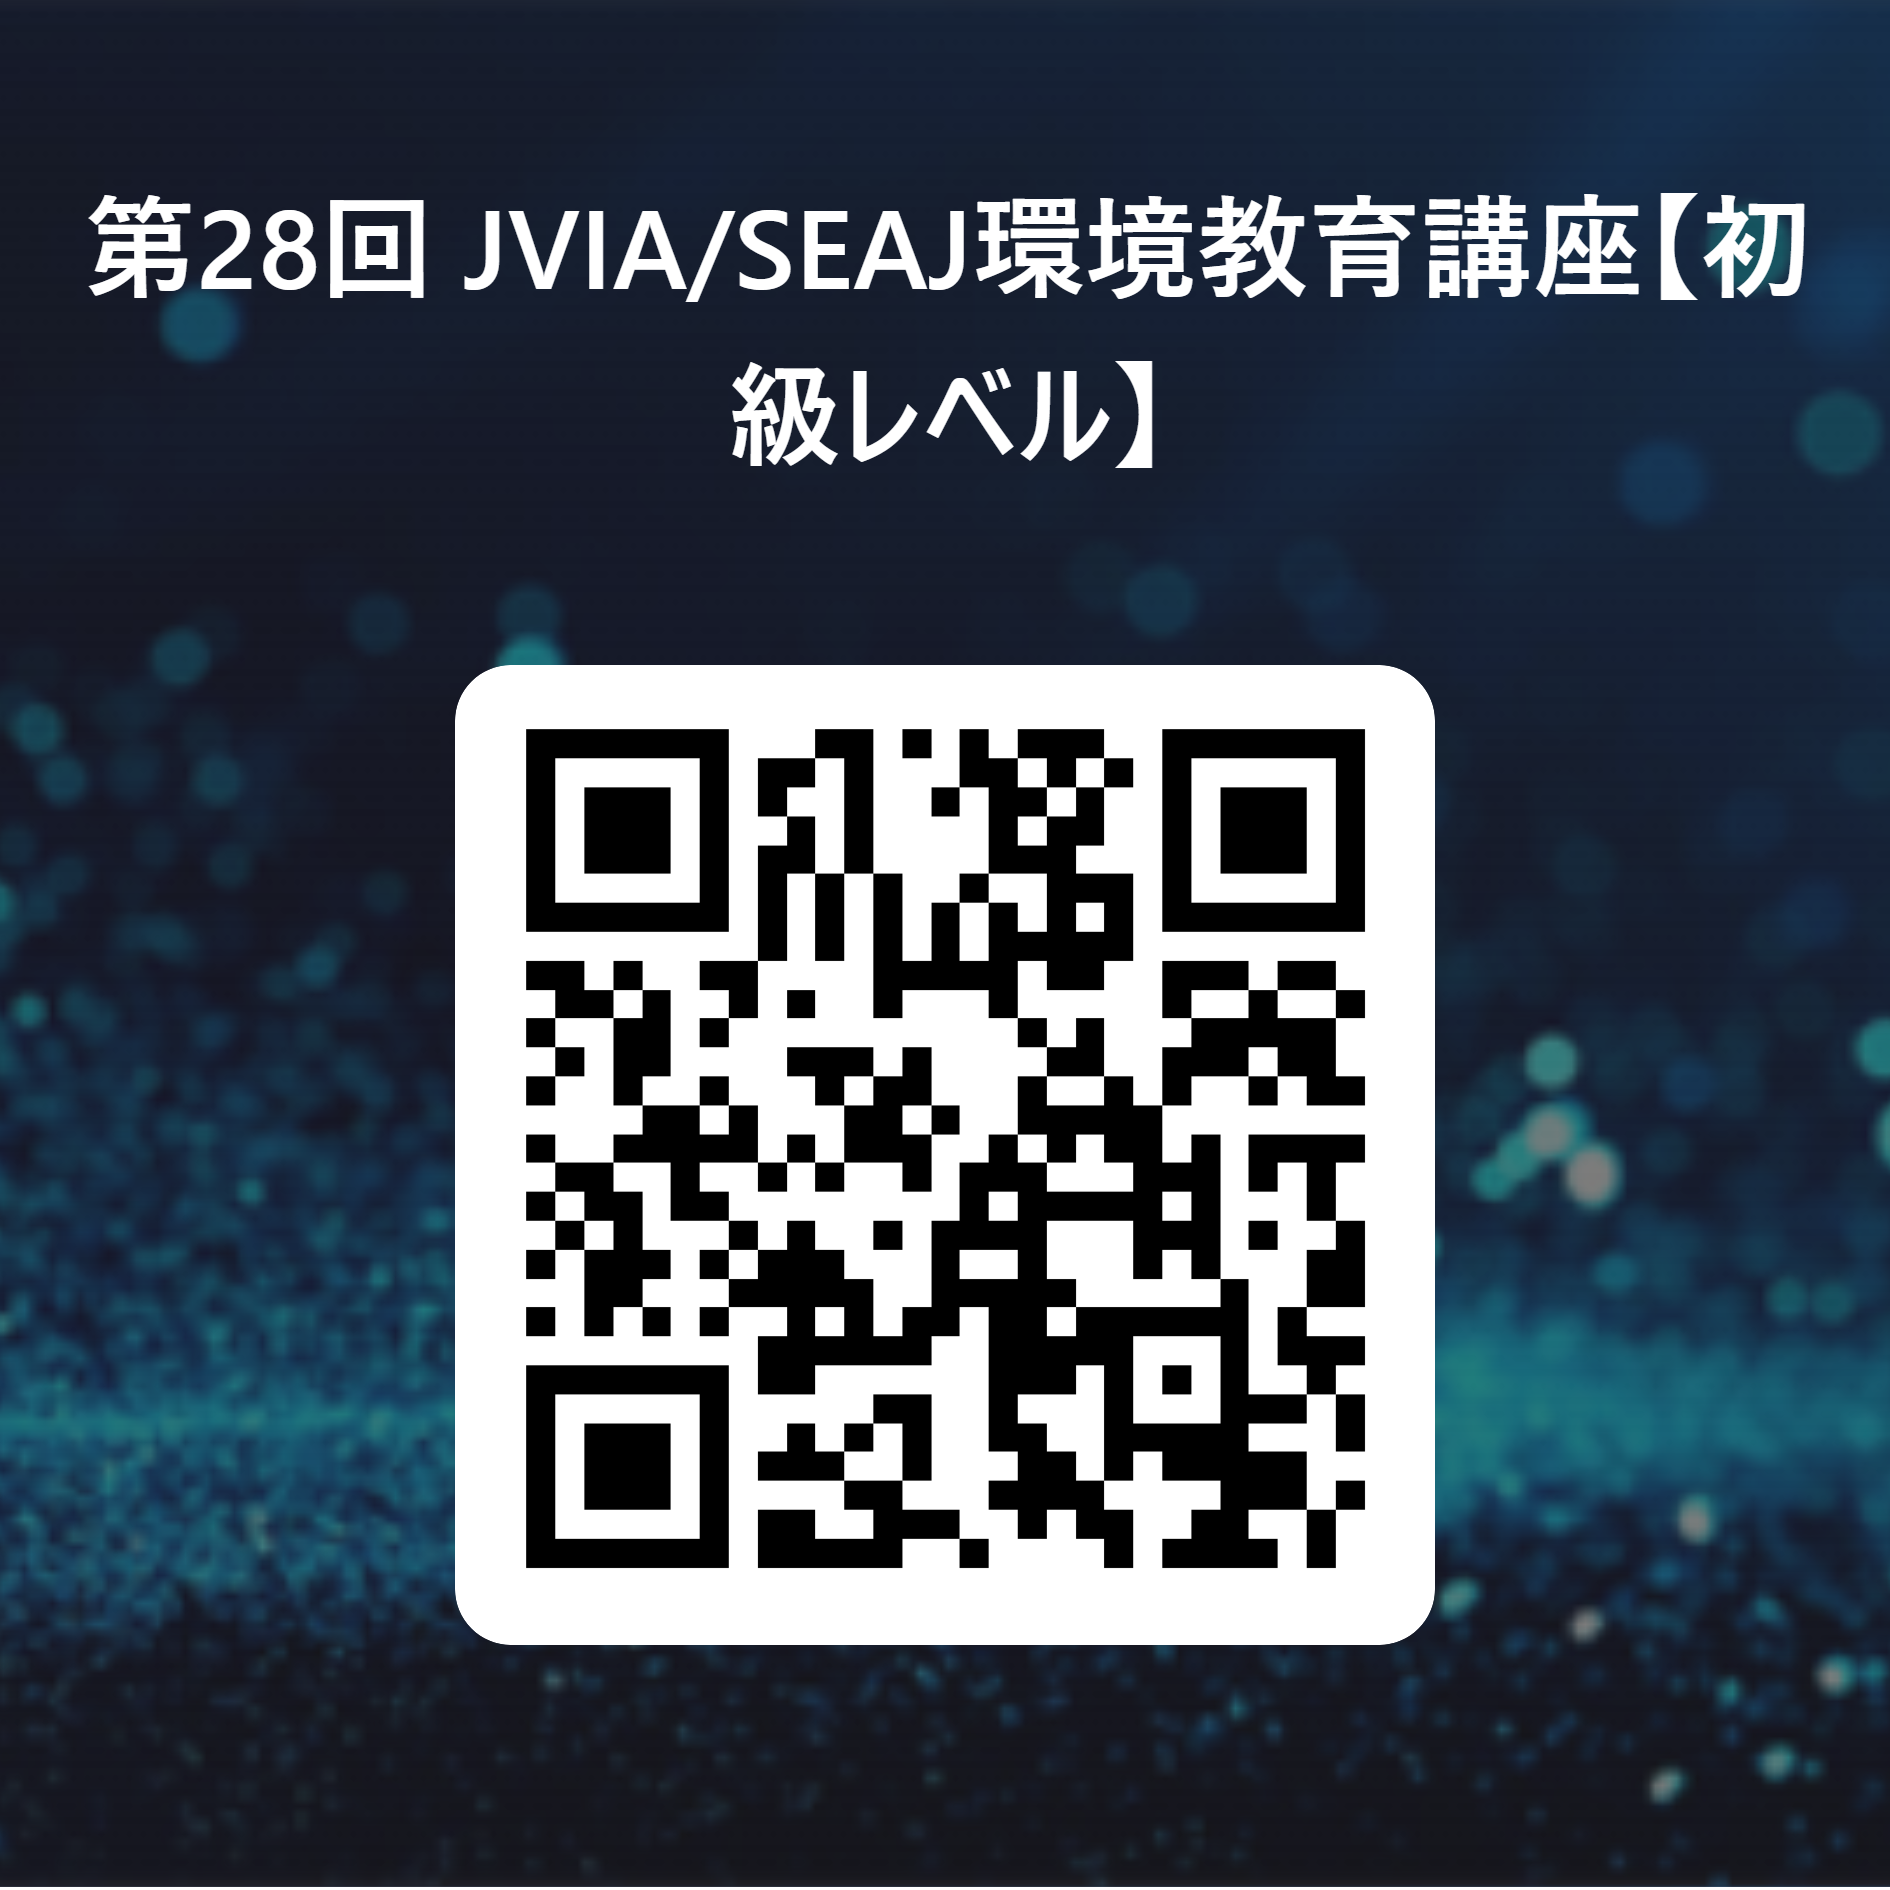 第28回 JVIA_SEAJ環境教育講座【初級レベル】 用 QR コード (1).png